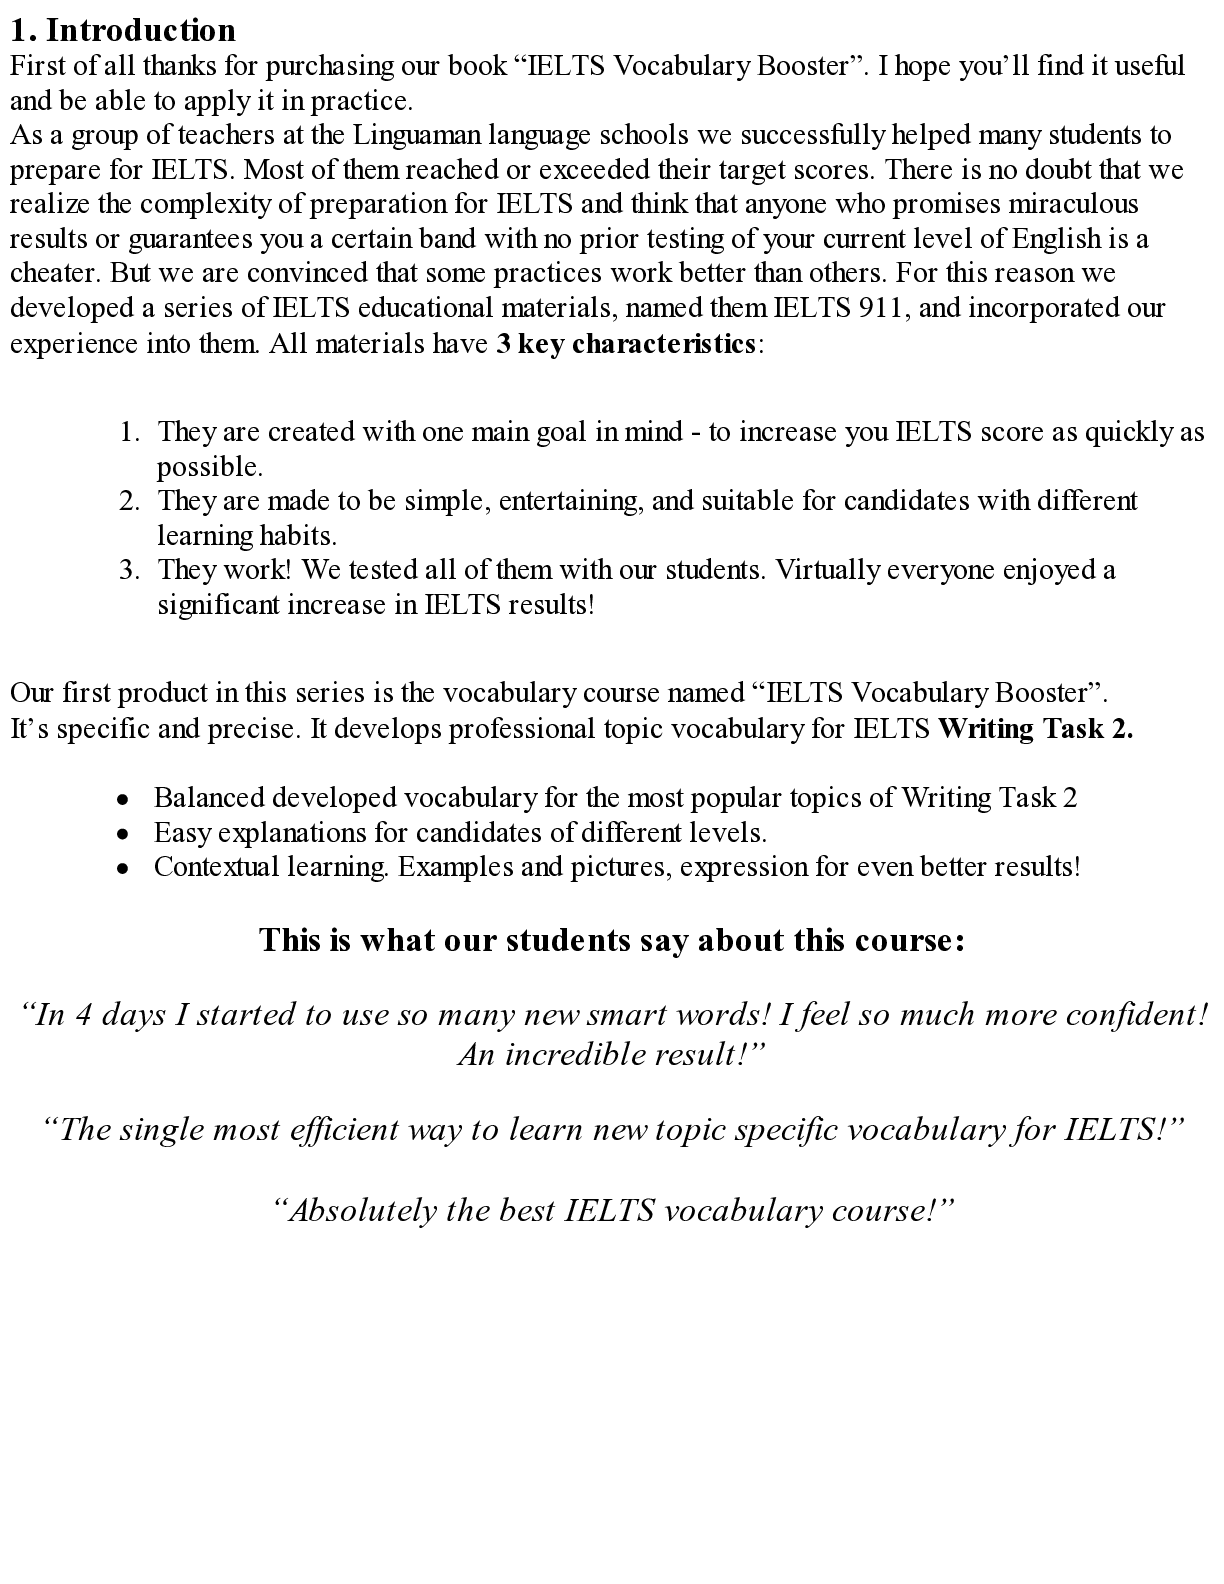 Sách IELTS Vocabulary Booster | Xem online, tải PDF miễn phí (trang 4)